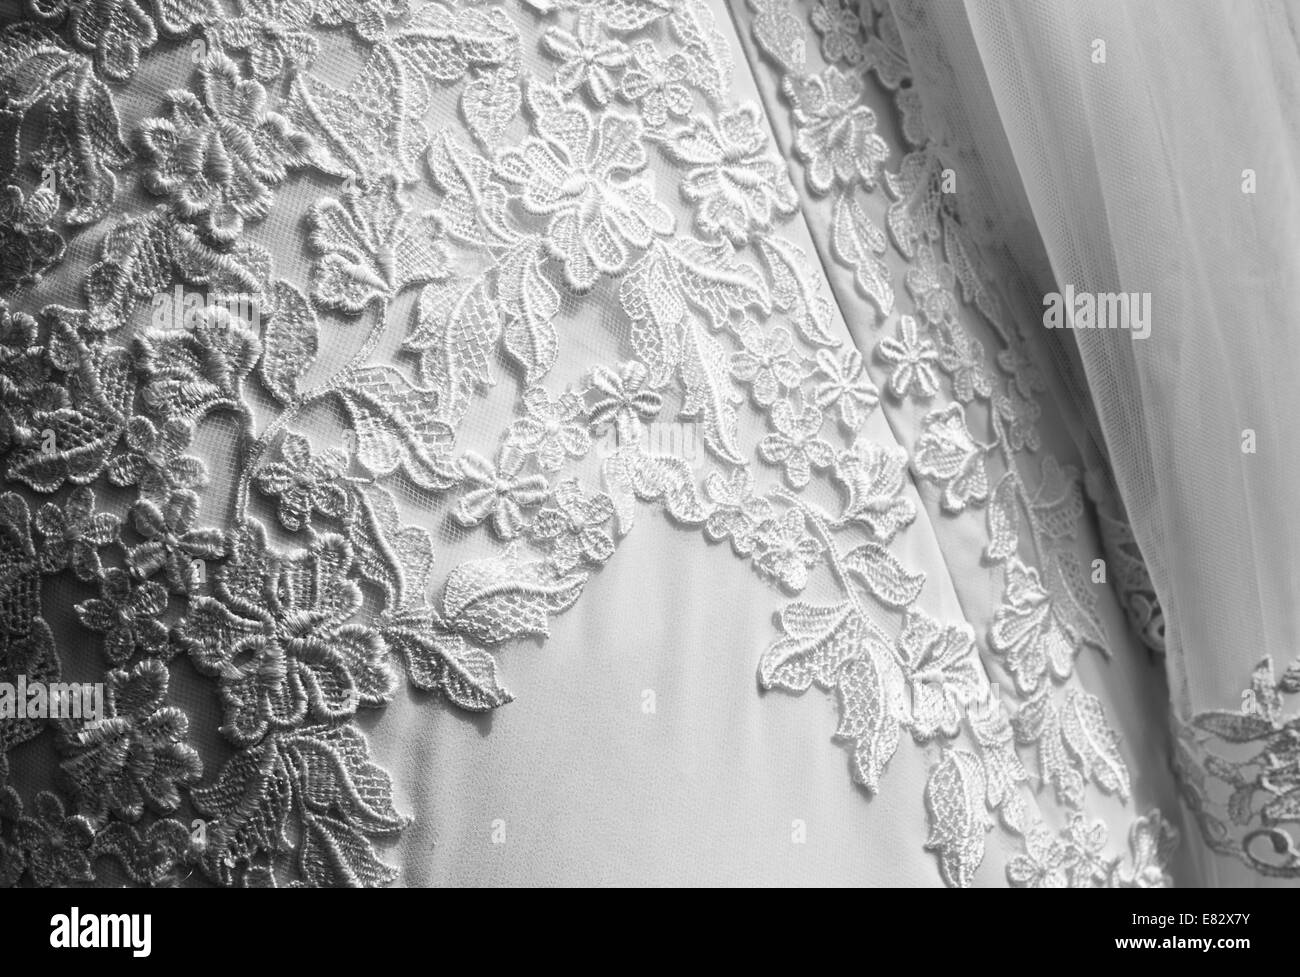 Detail des Brautkleid mit Schleier. Textur der Hochzeitskleid mit aufgestickten Blumen. Schwarz / weiß Bild Stockfoto